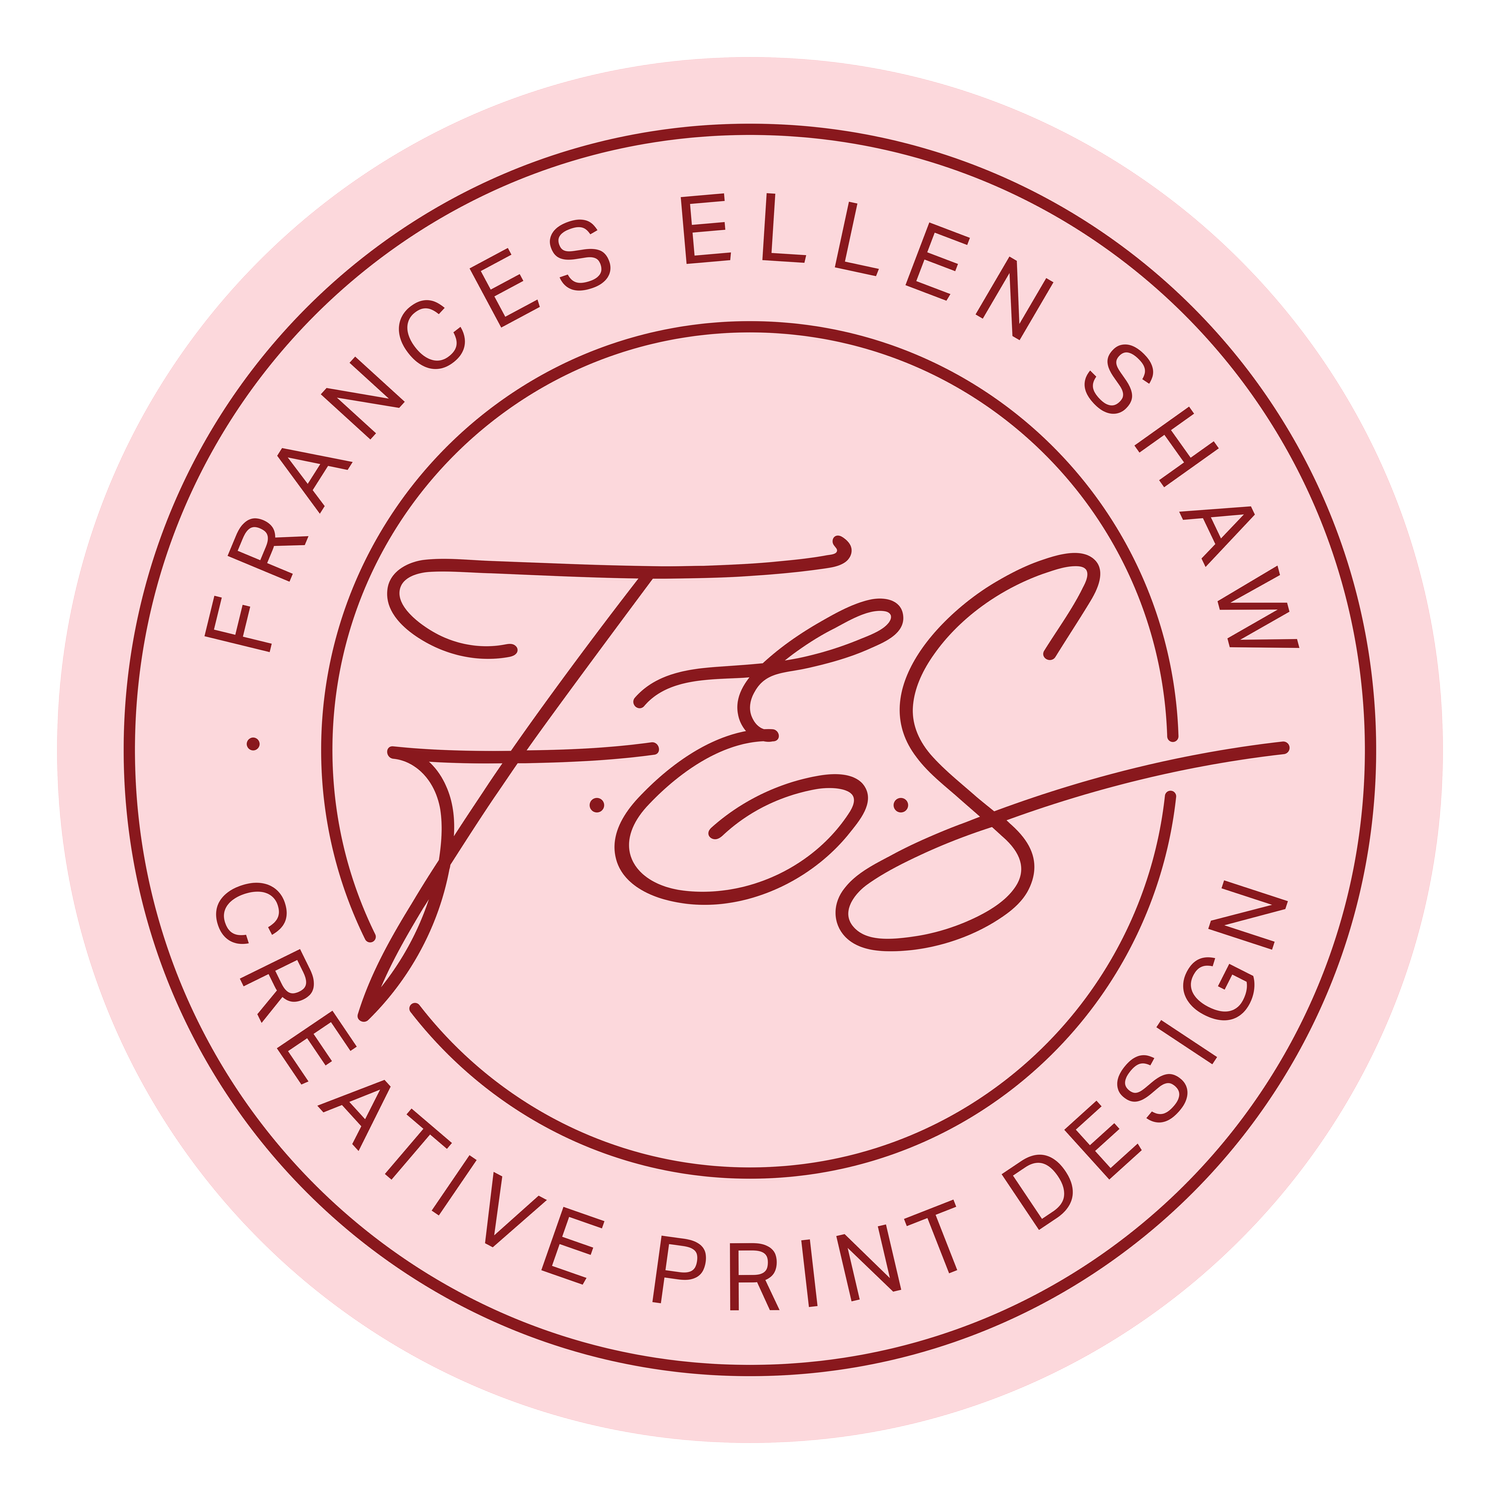 Frances Ellen Shaw Print Design